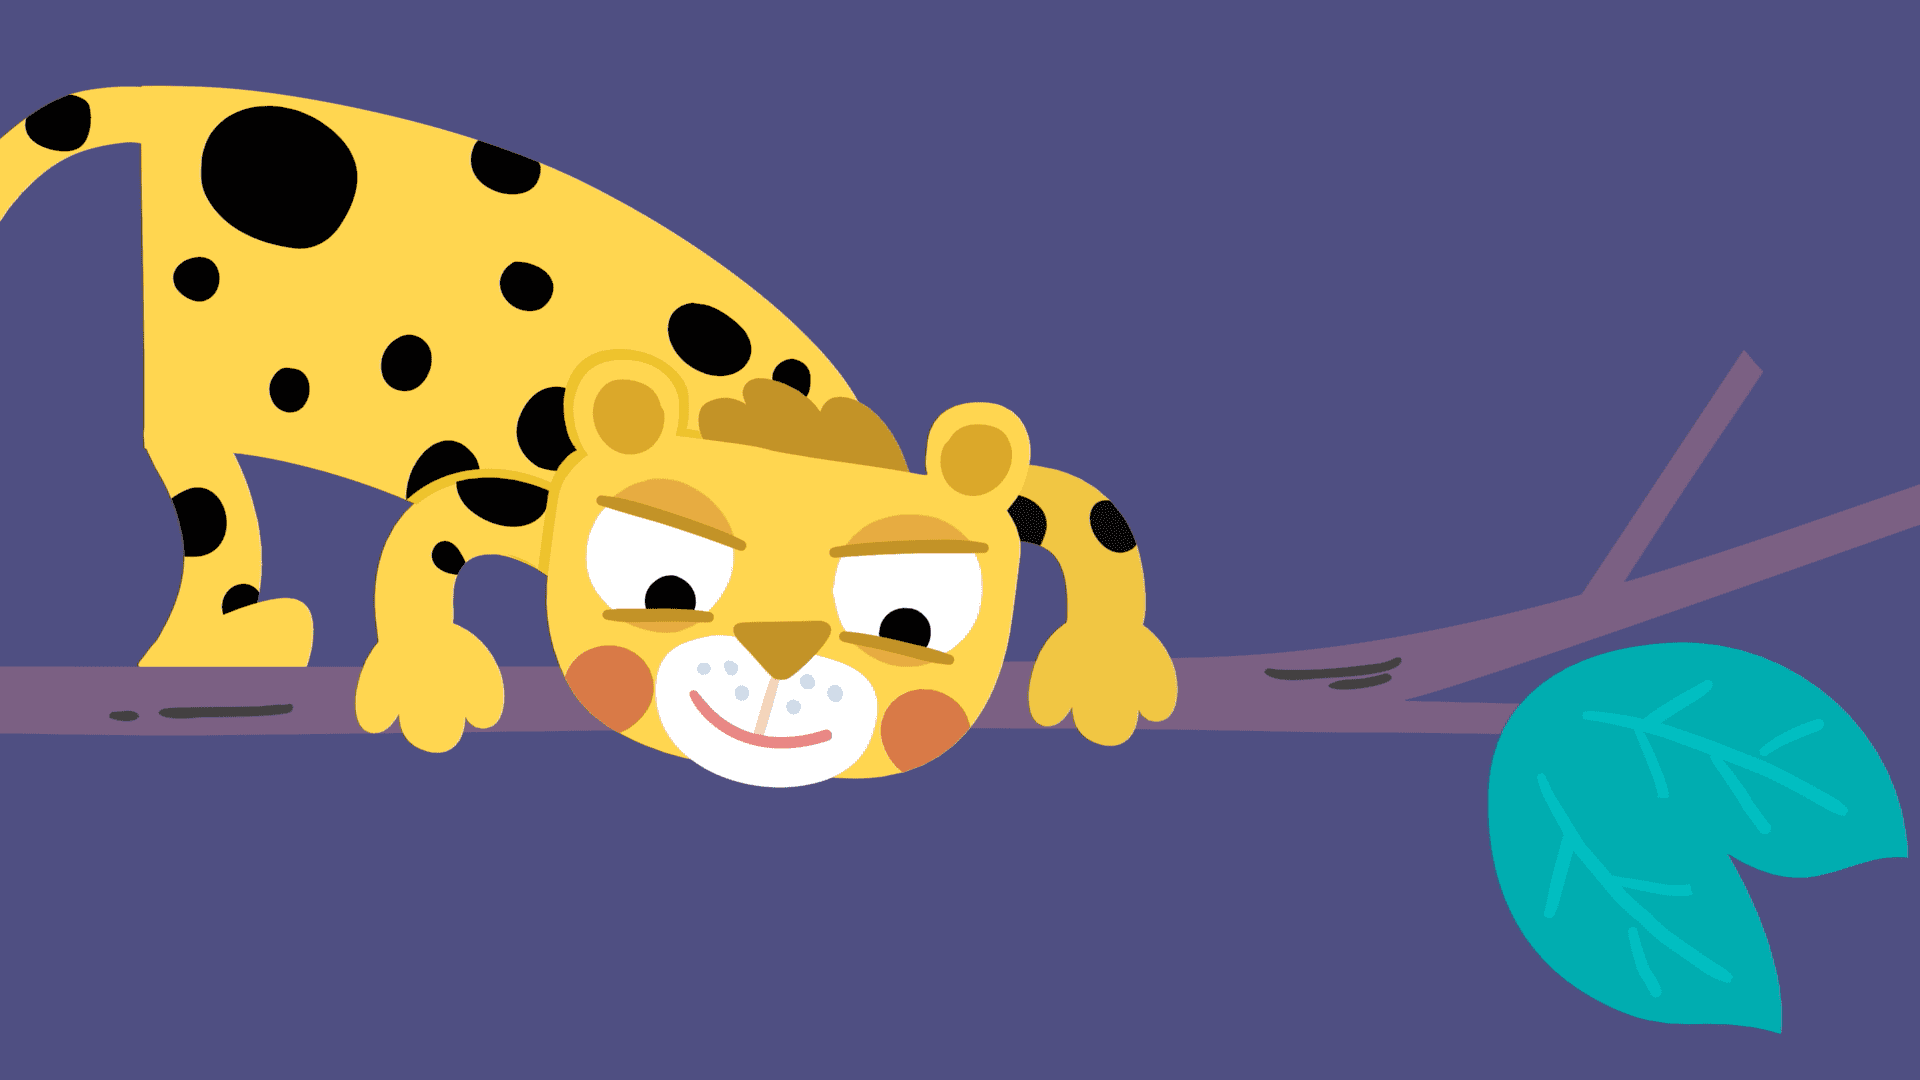 Lleopard